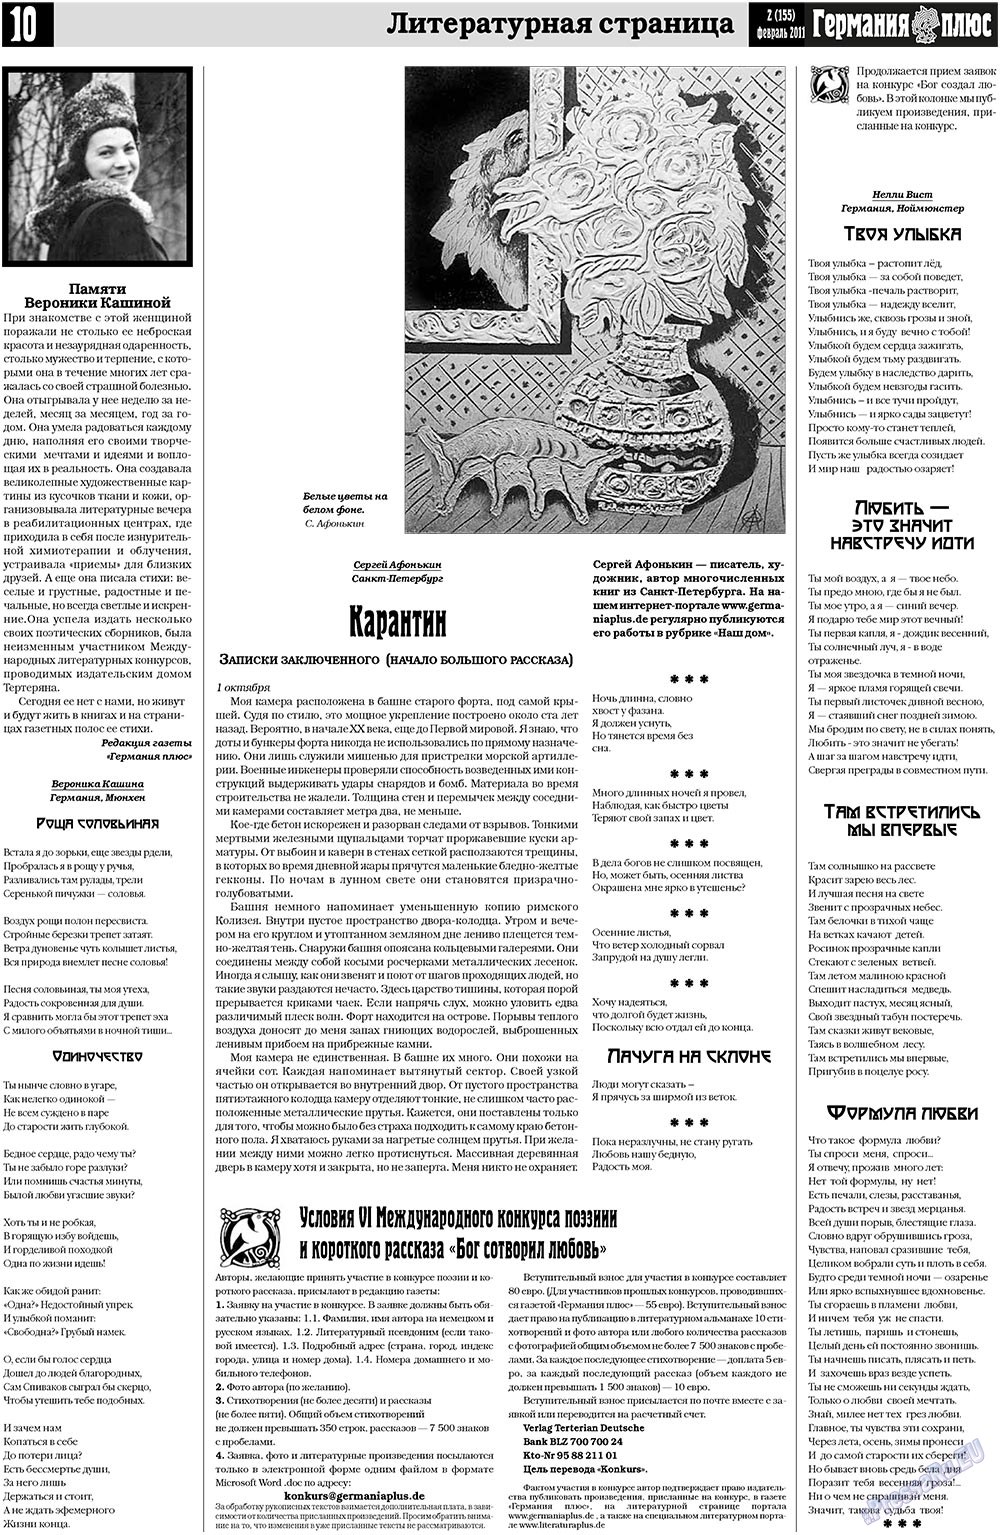 Германия плюс (газета). 2011 год, номер 2, стр. 10